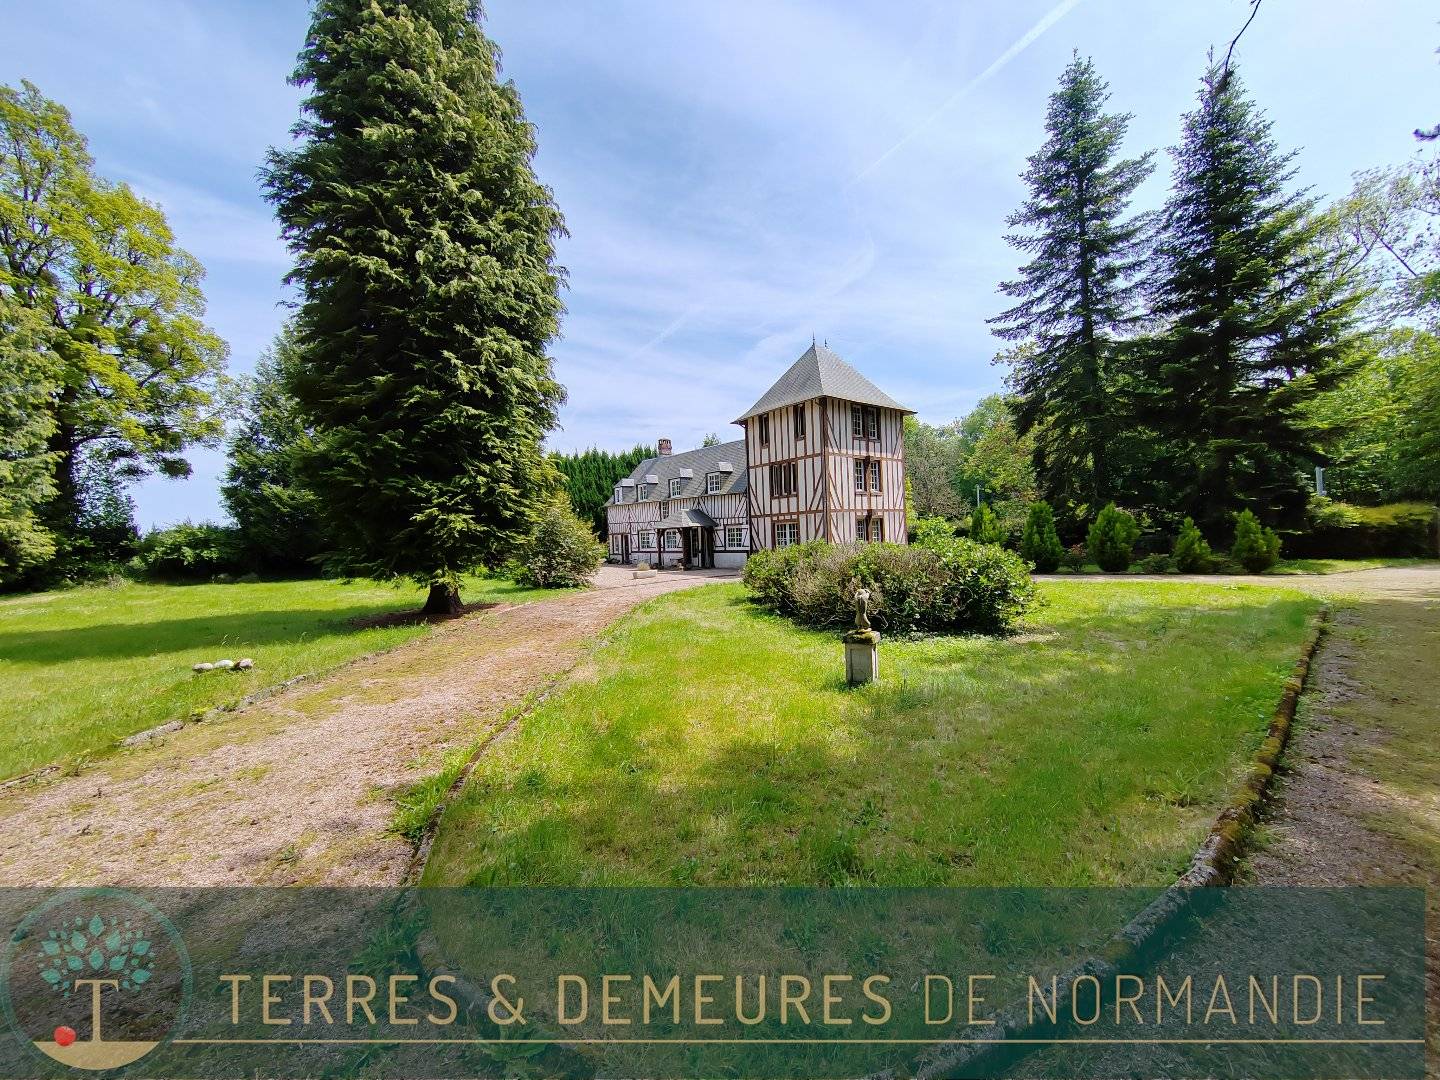 5 min. de Cormeilles, dans un environnement boisé très calme, maison normande 5 chambres, dépendances, terrain de 1.2 ha.